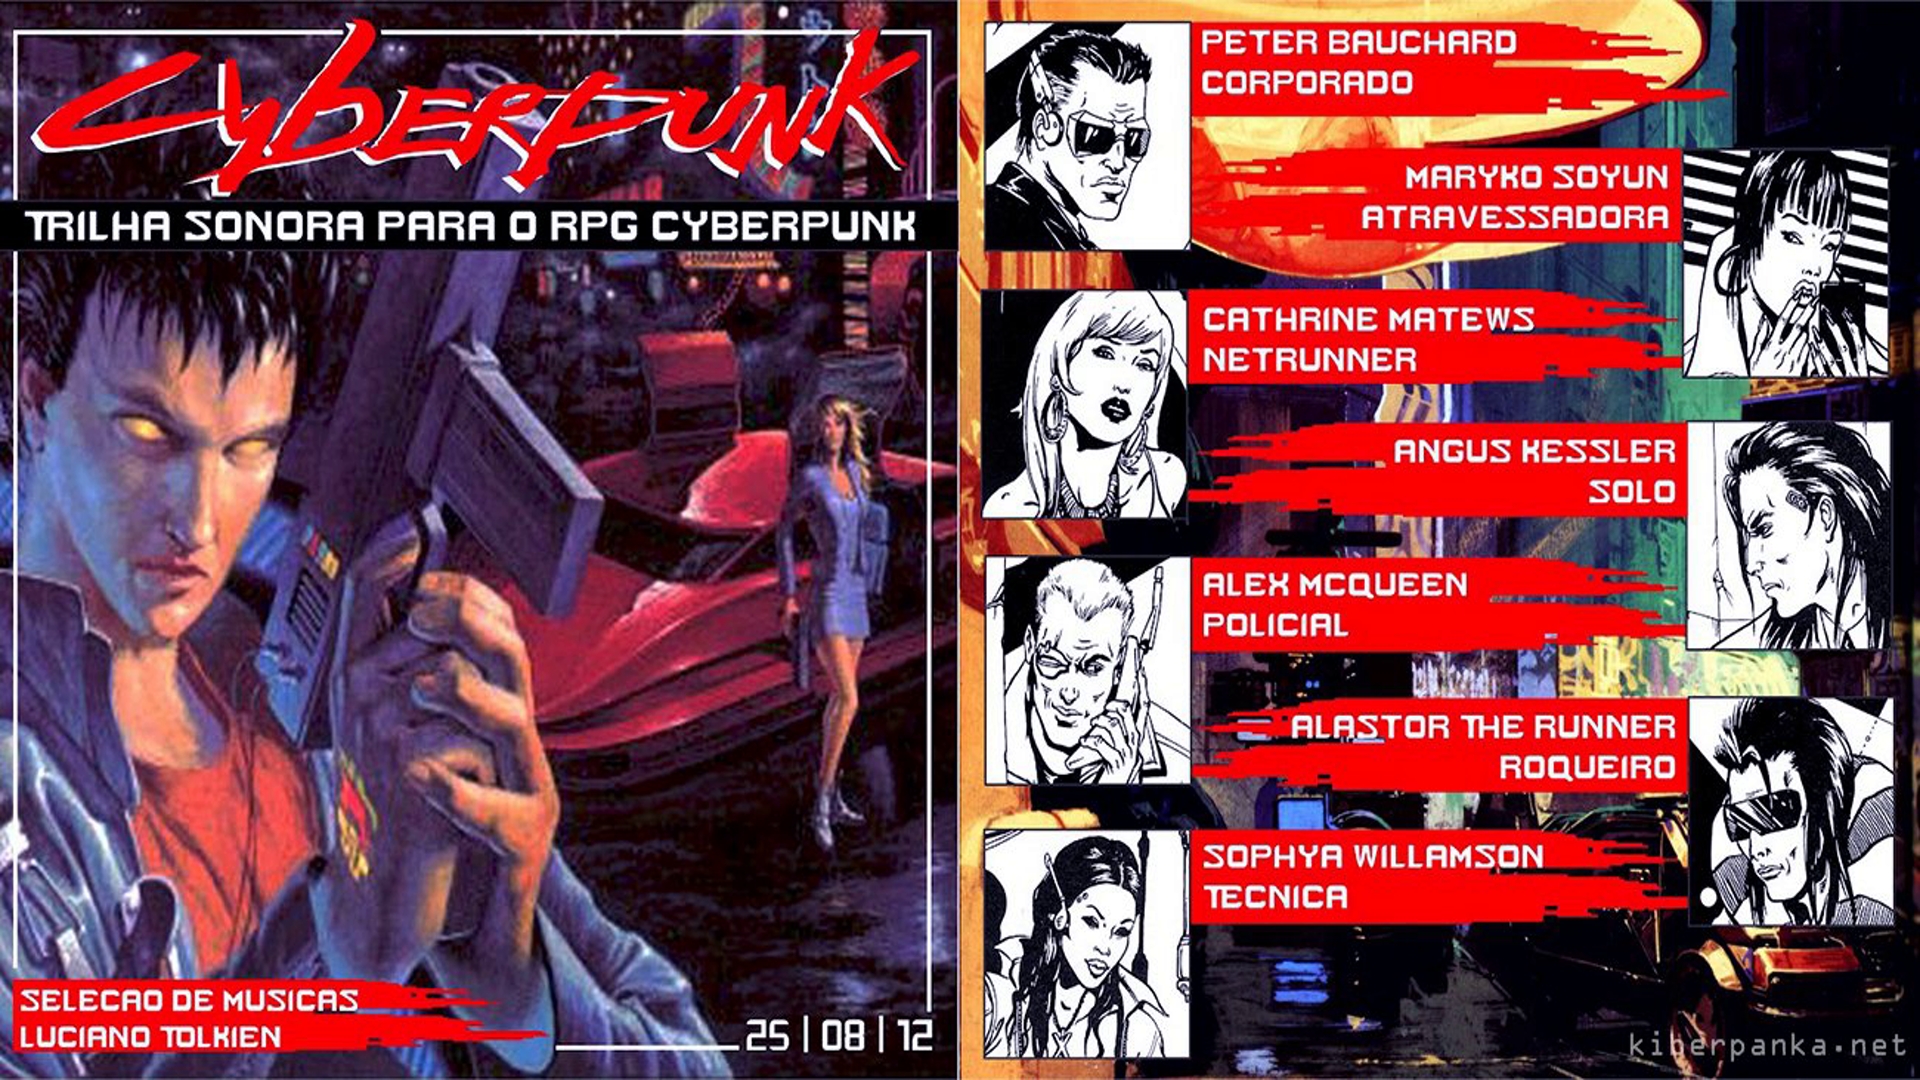 Cyberpunk red настольная игра купить на русском фото 11